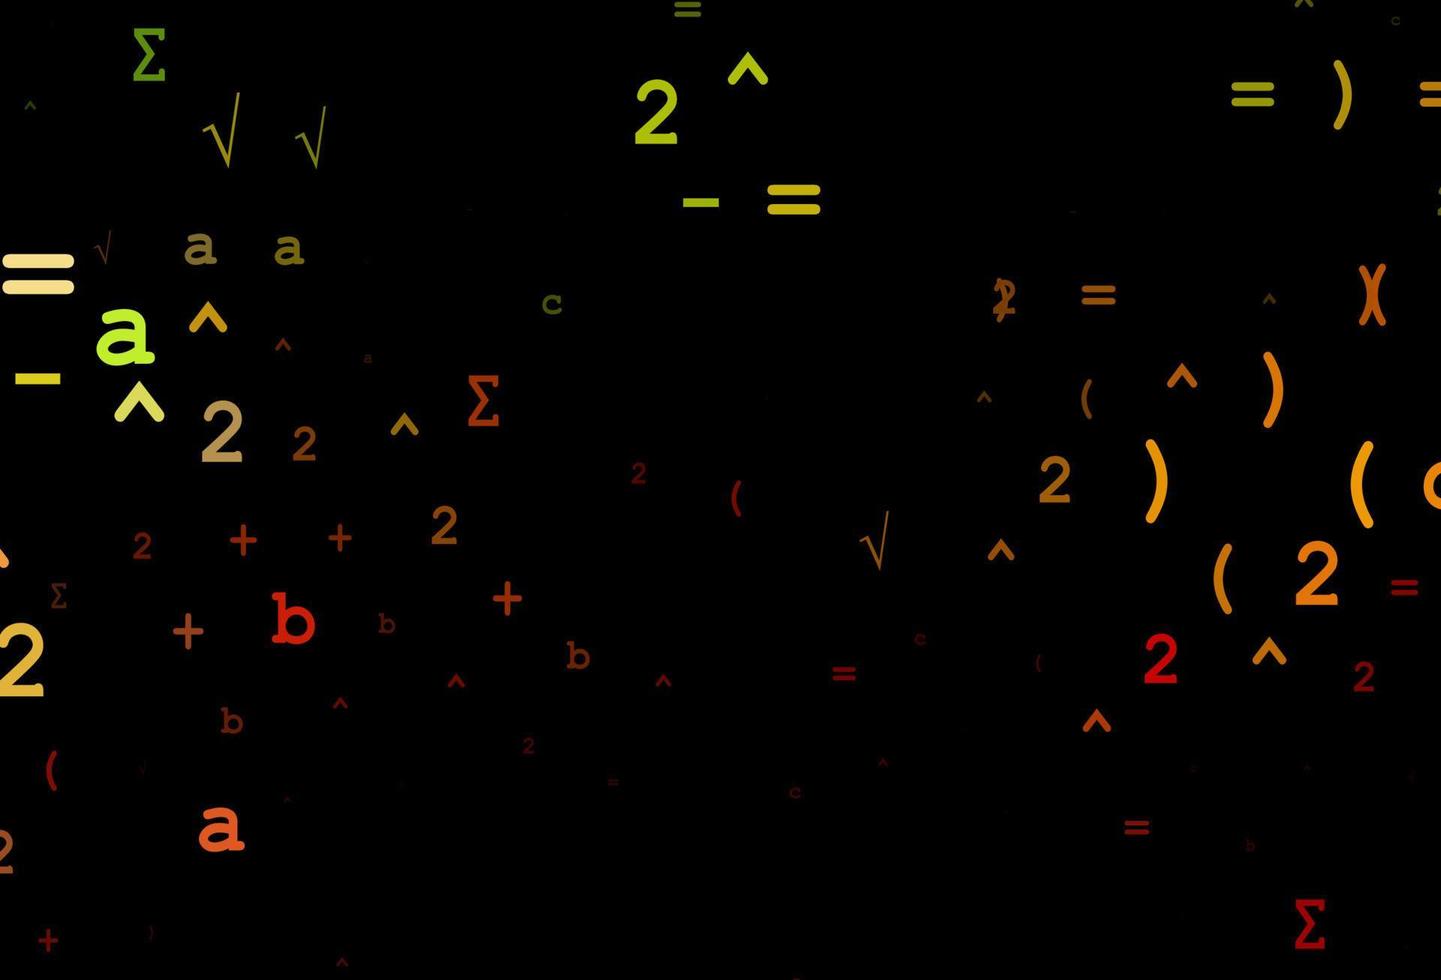 mörk grön, röd vektor textur med matematiskt symboler.